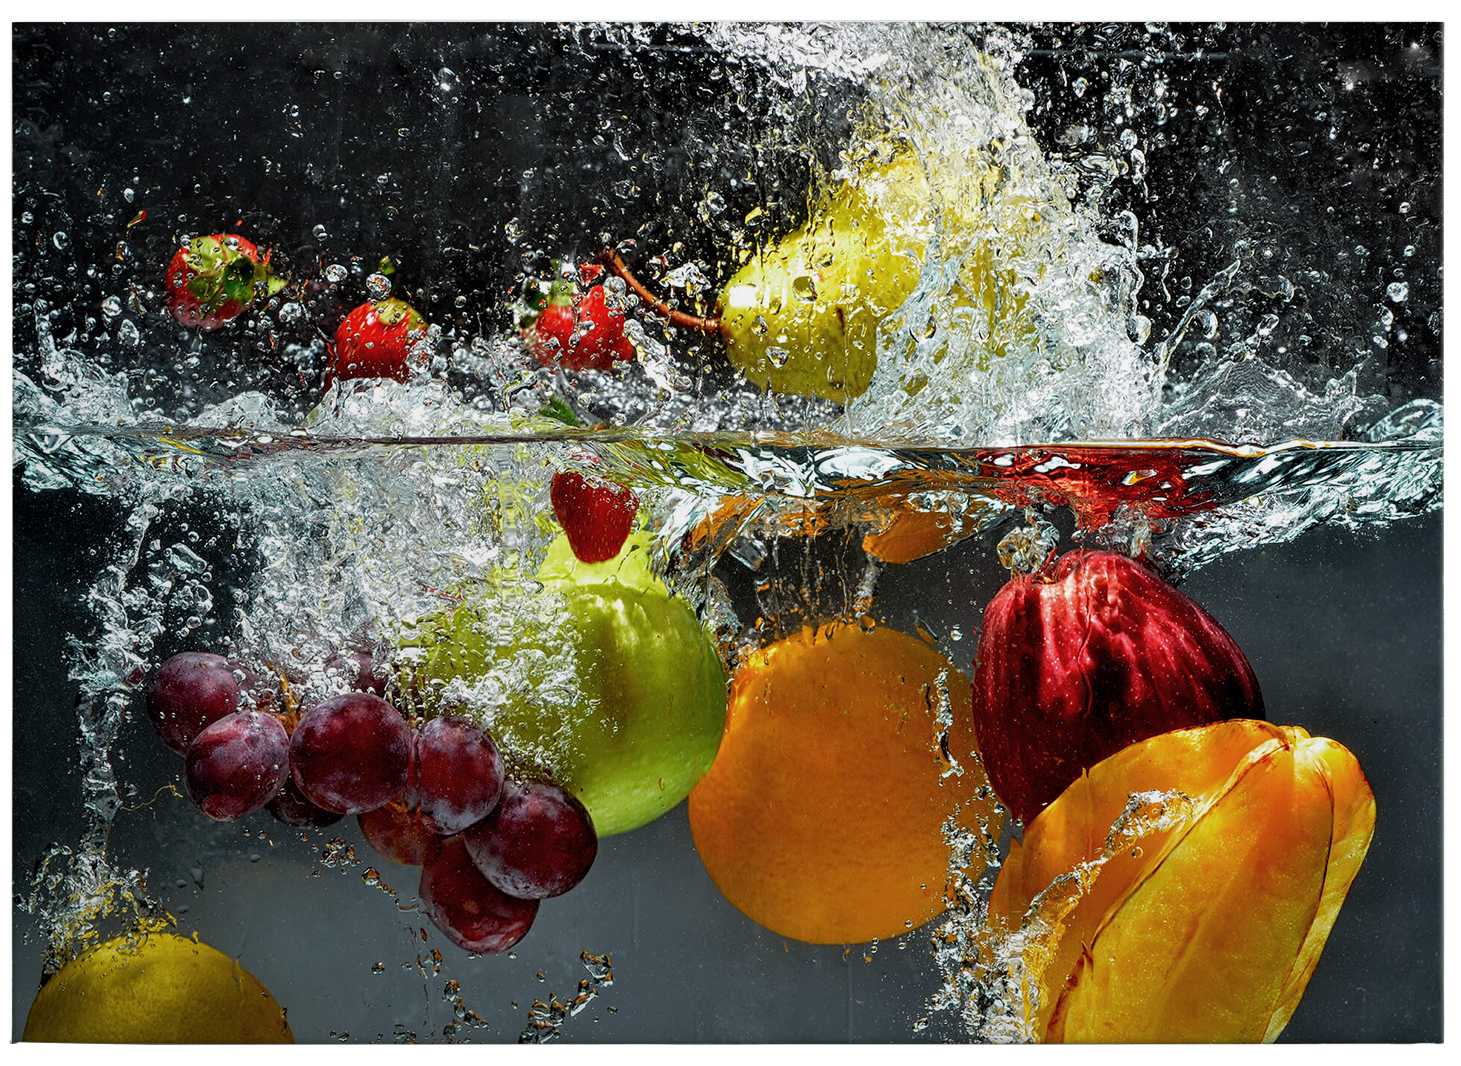             Lienzo pintando fruta fresca en un baño de agua - 0,70 m x 0,50 m
        